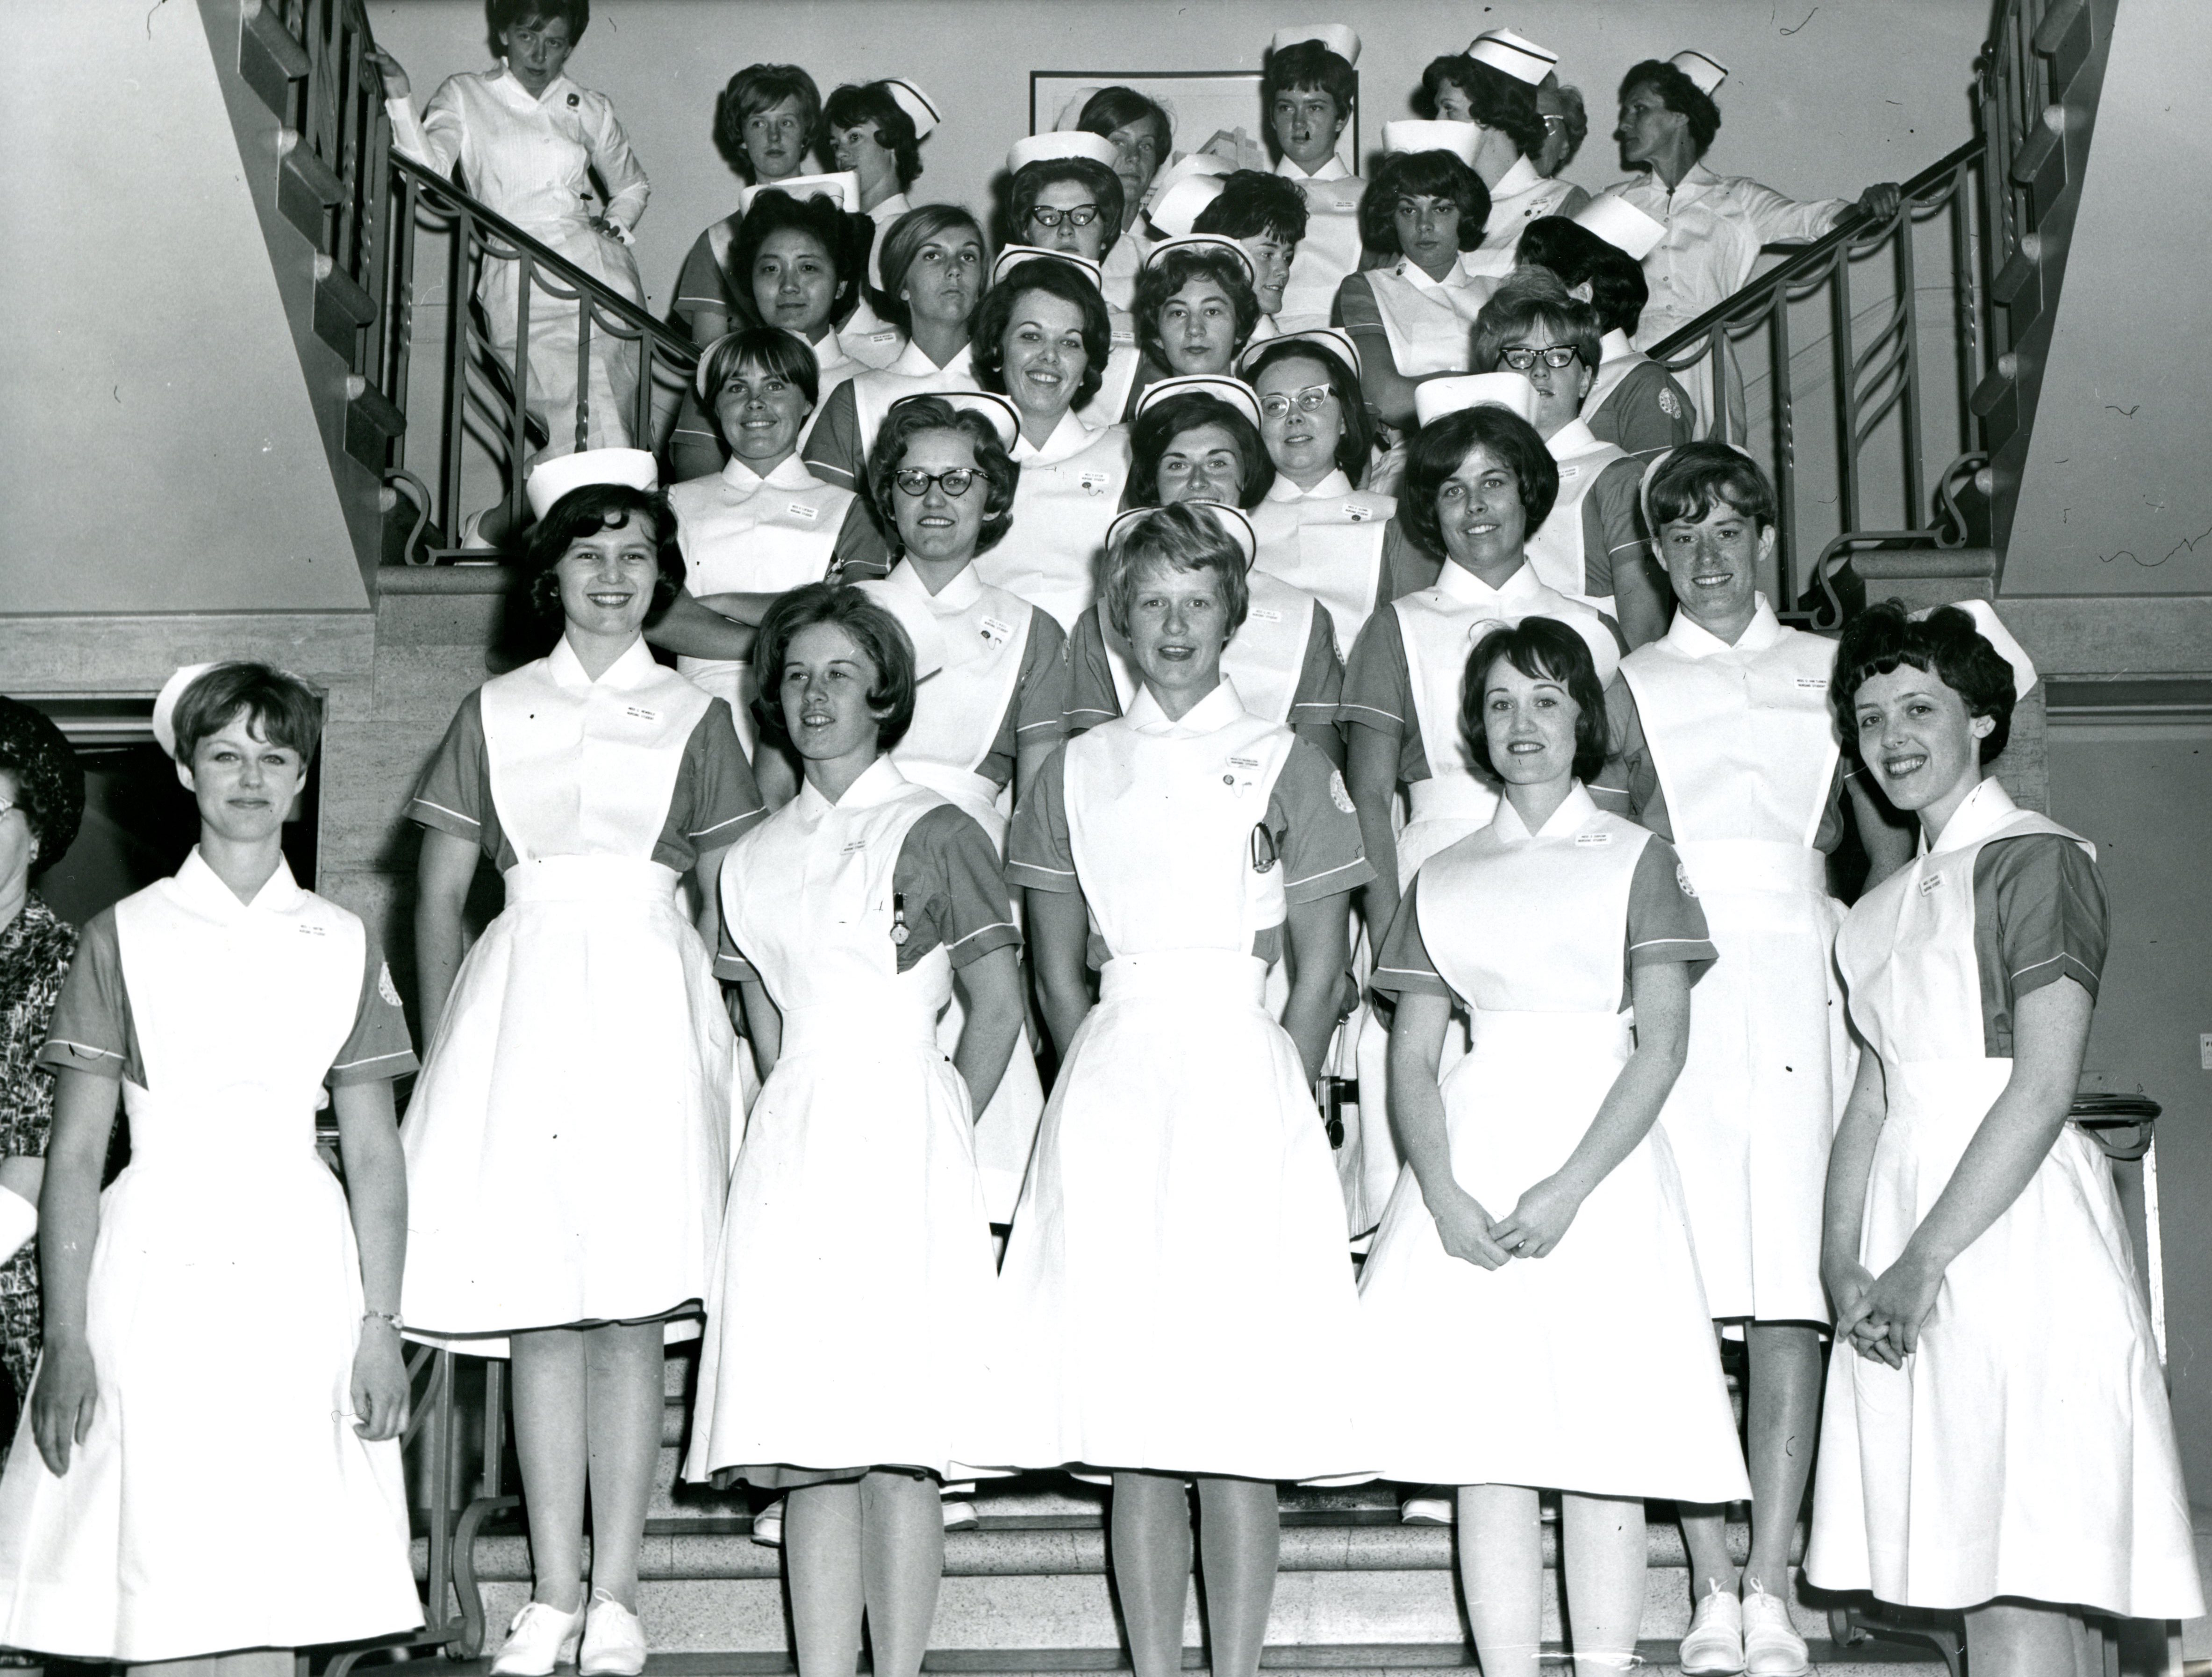 Un grand groupe de femmes pose pour un photographe sur un escalier. Elles portent des uniformes d’infirmière avec coiffes.